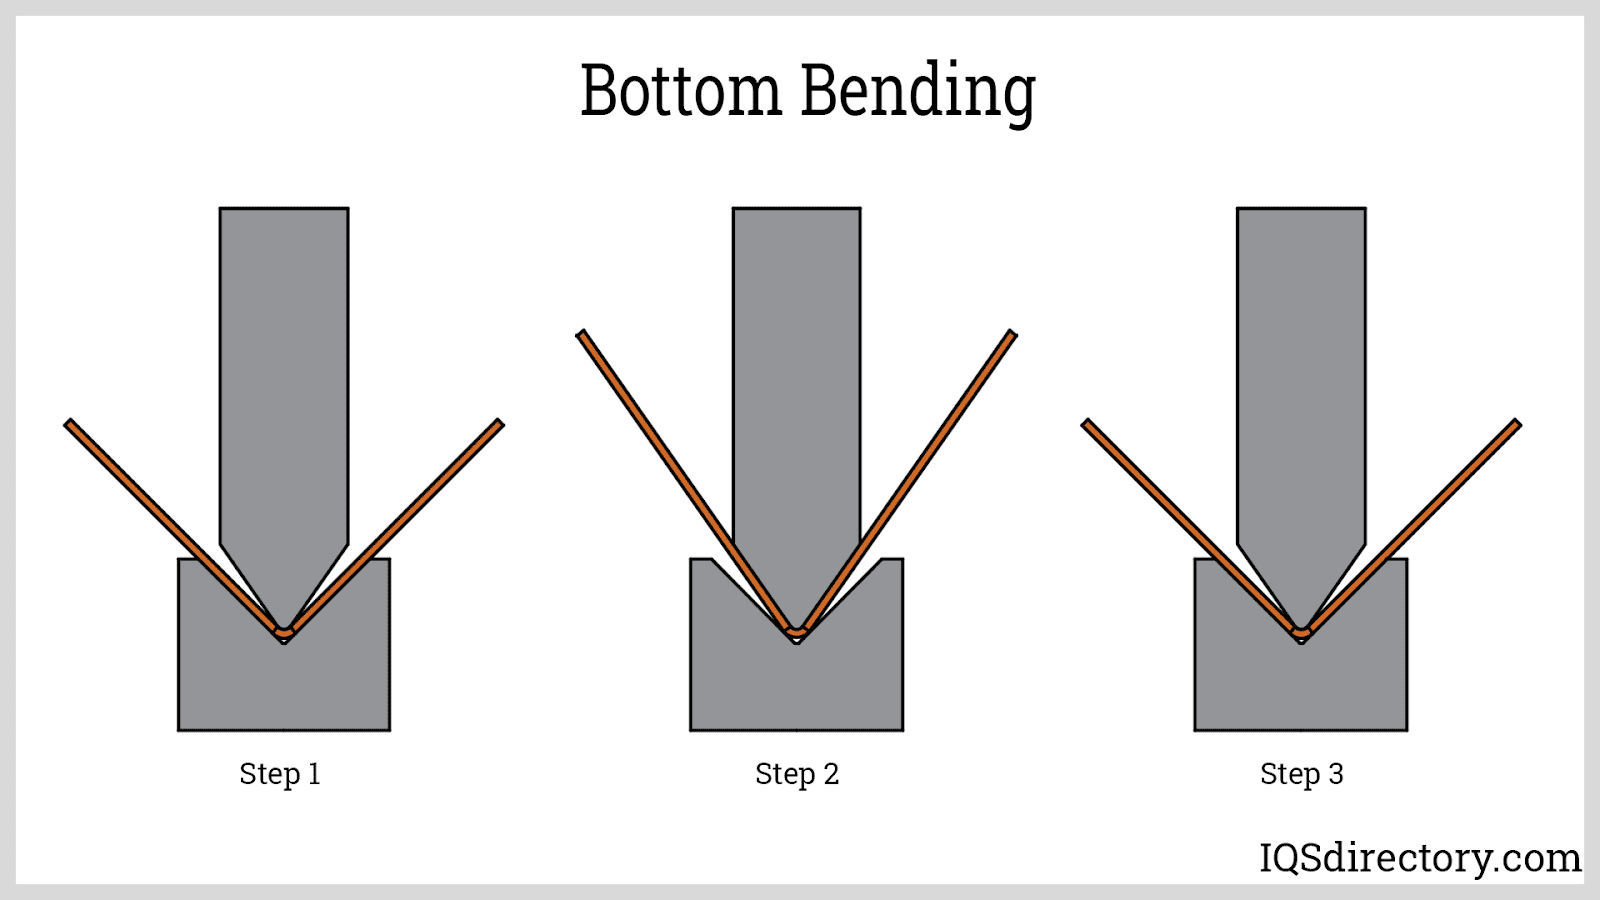 Bottom Bending